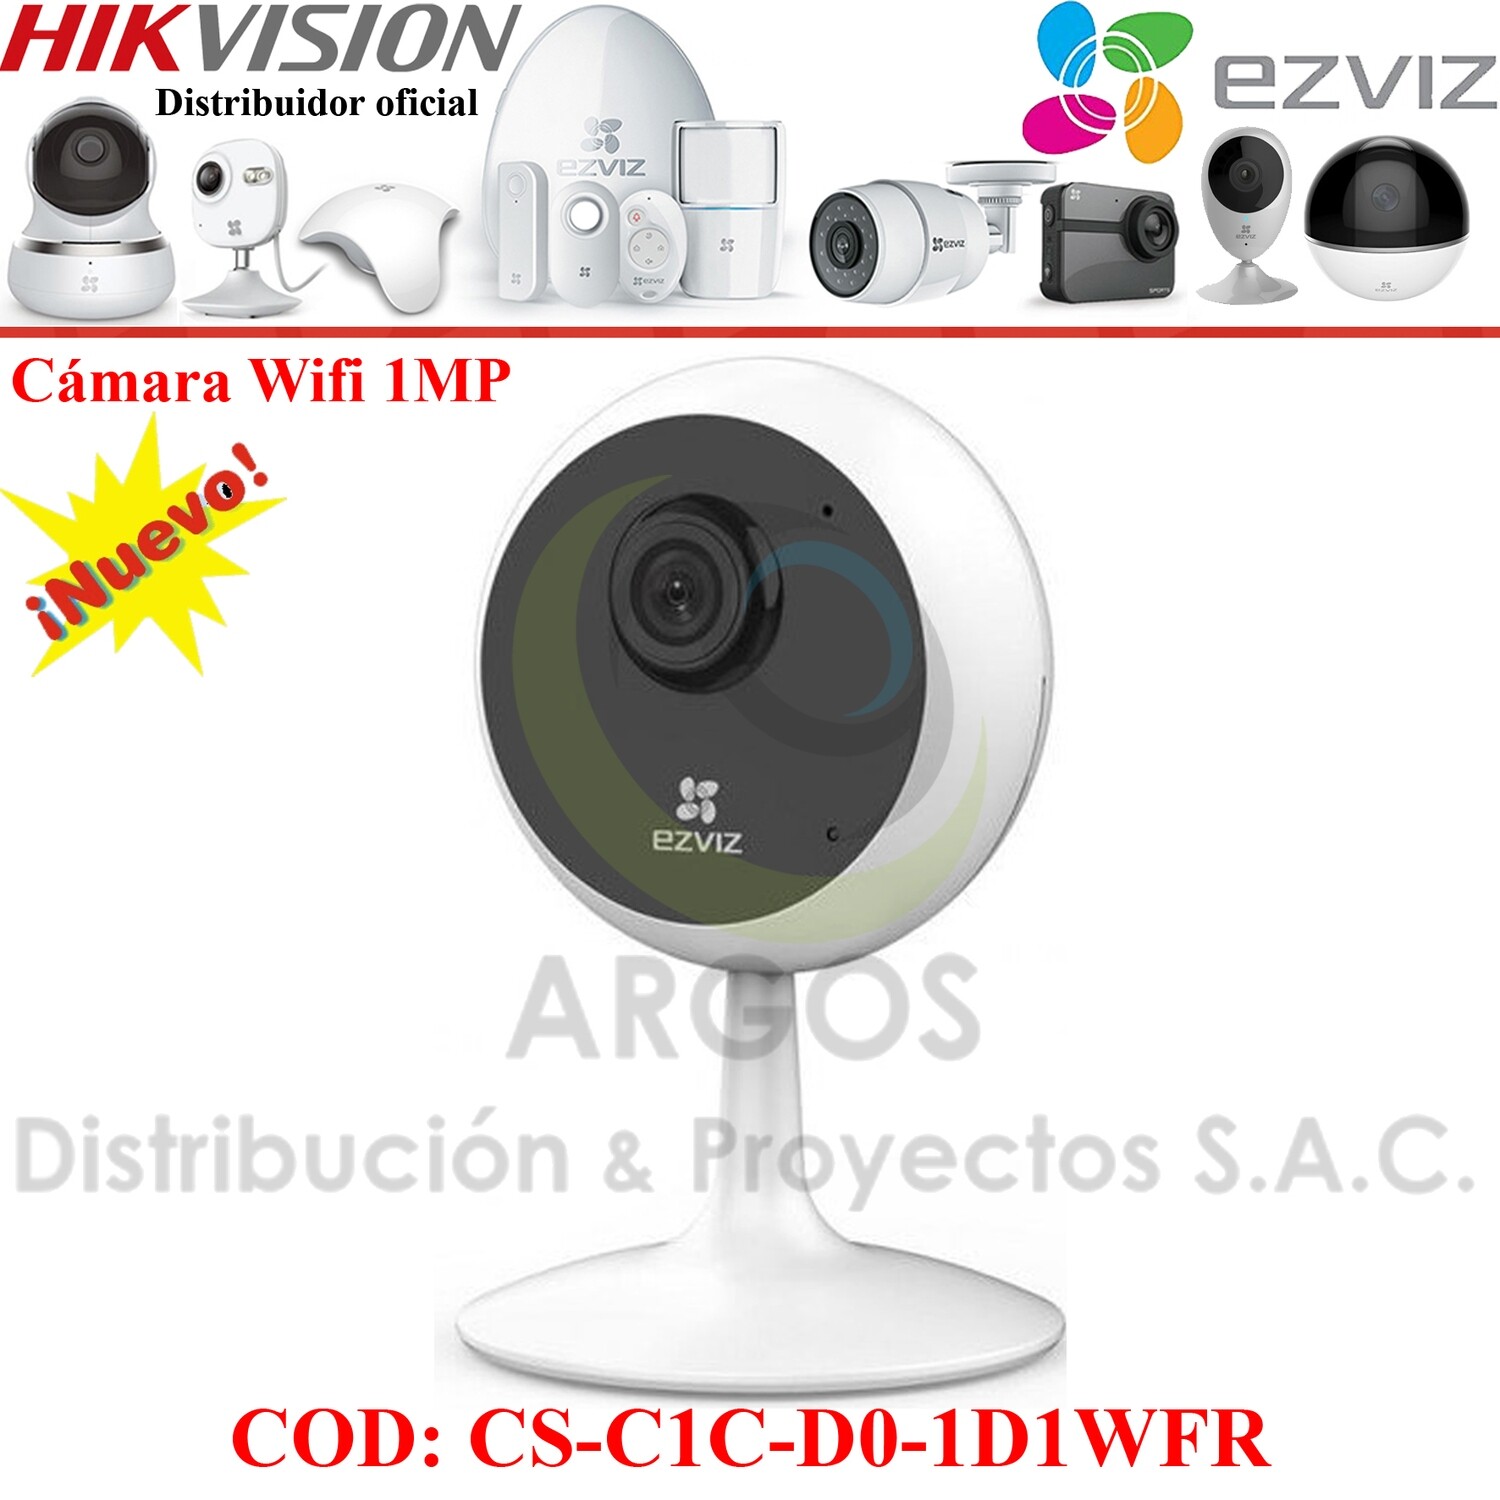 CAMARA INTERIOR IP WIFI HD 720P / 1080P EZVIZ